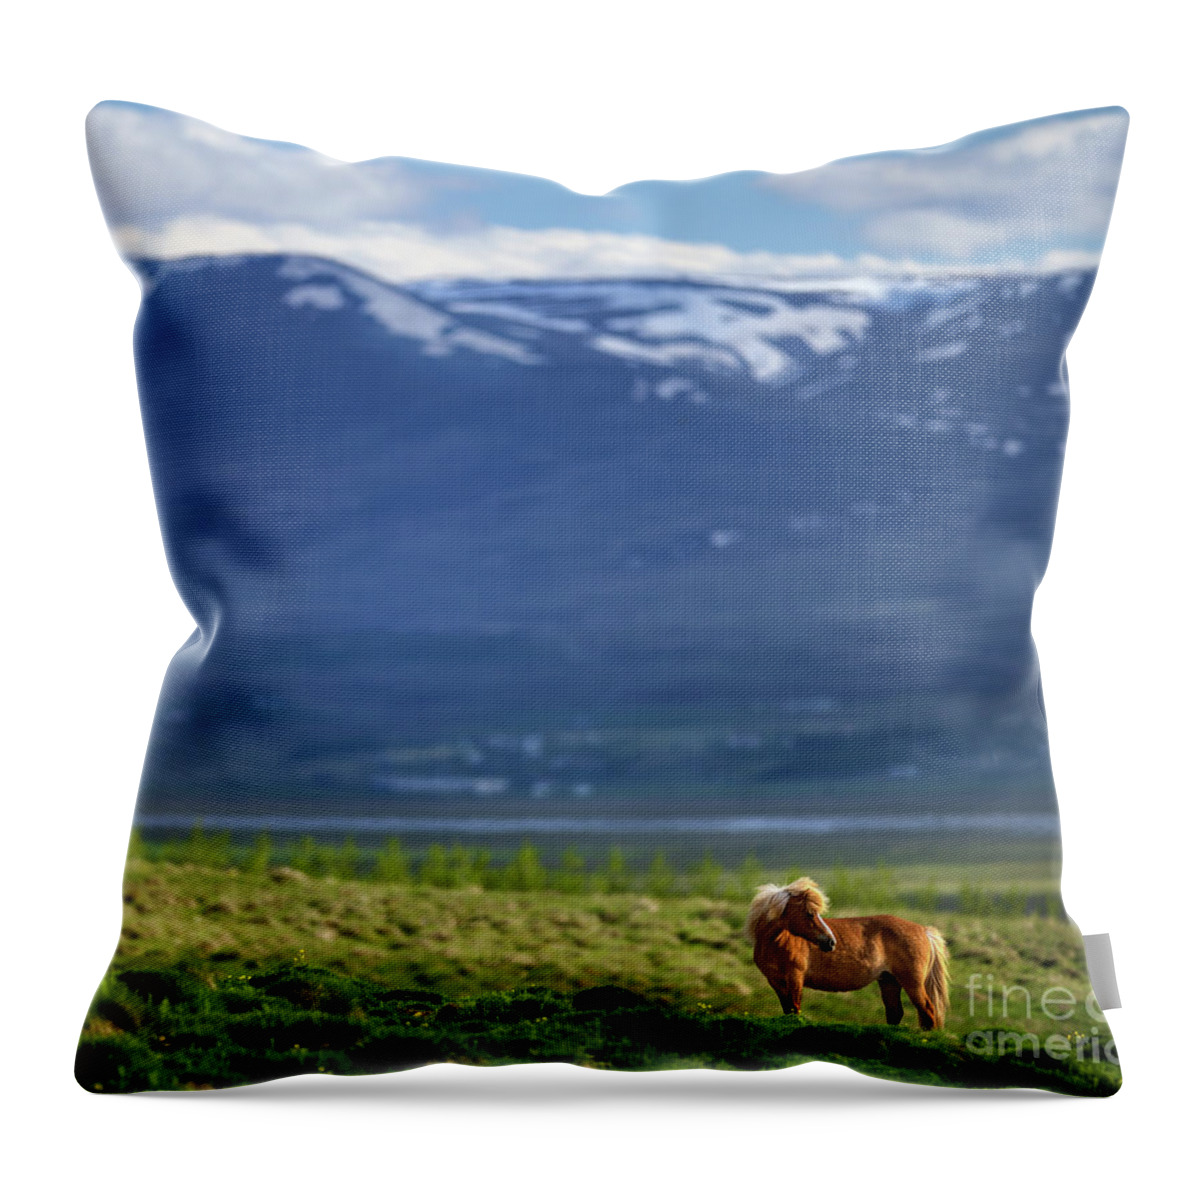 Hofsstadir Ranch Horse Throw Pillow featuring the photograph Hofsstadir Ranch Horse by Doug Sturgess